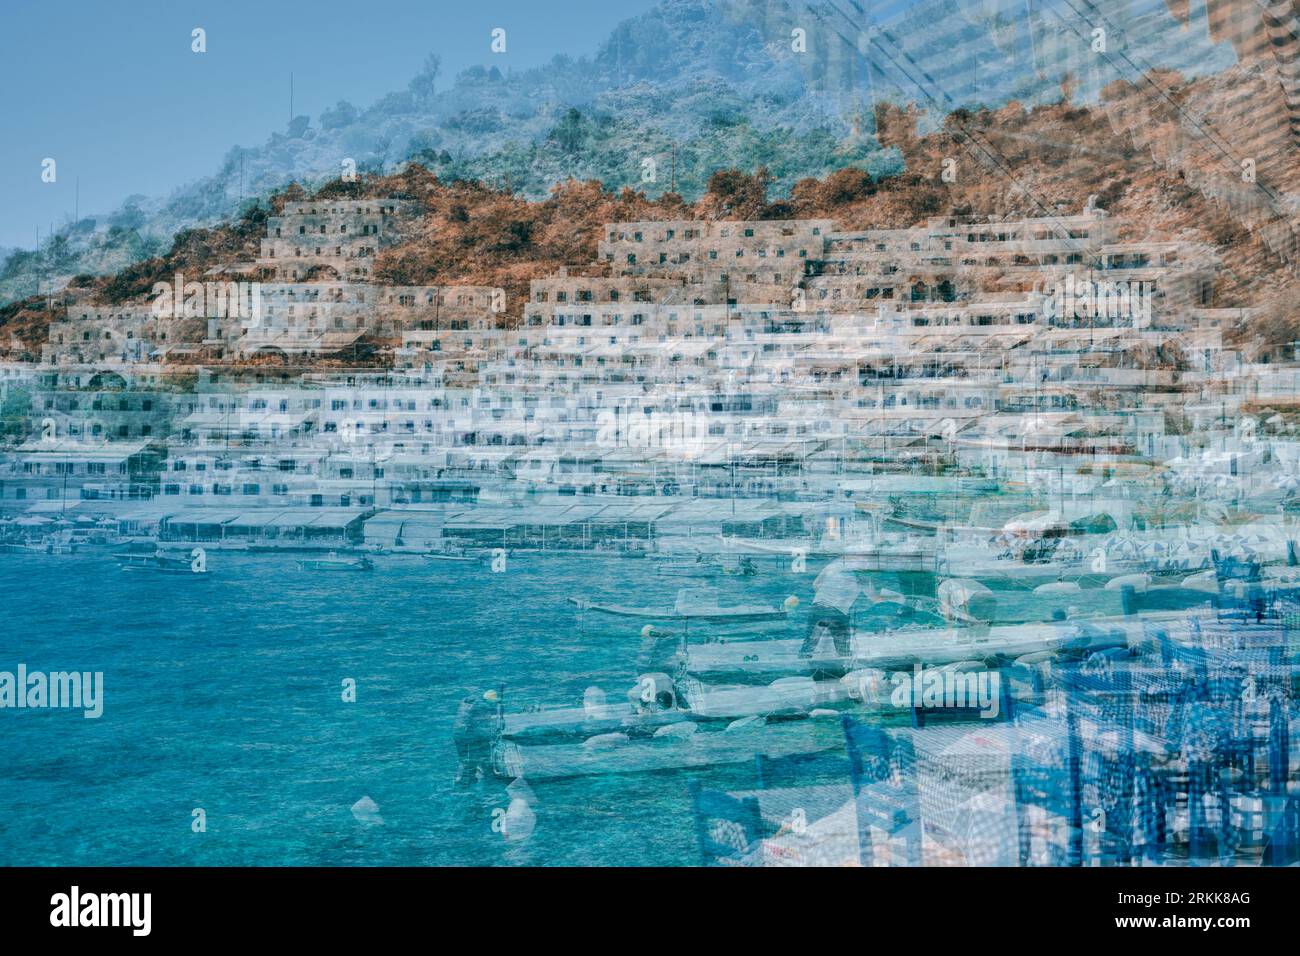 Abstrakt von Loutro, Kreta, durch Überlagerung mehrerer Belichtungen geschaffen, um einen Eindruck vom Hafen und seinen hübschen Farben zu schaffen. Stockfoto